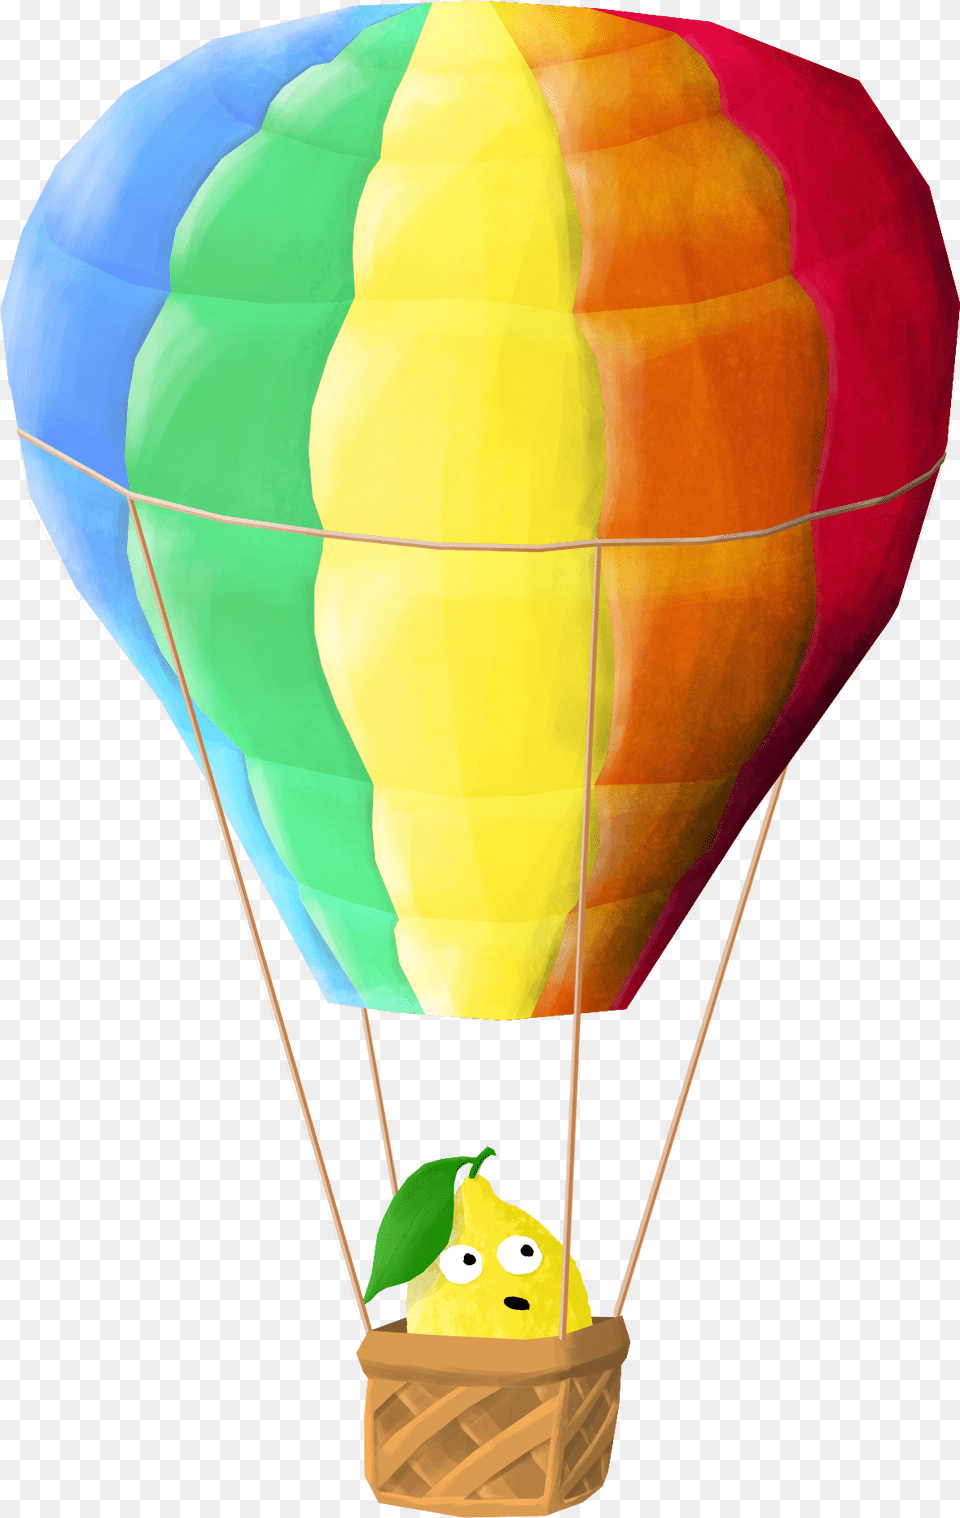 Juanlimon Hot Air Balloon, Aircraft, Hot Air Balloon, Transportation, Vehicle Free Png Download